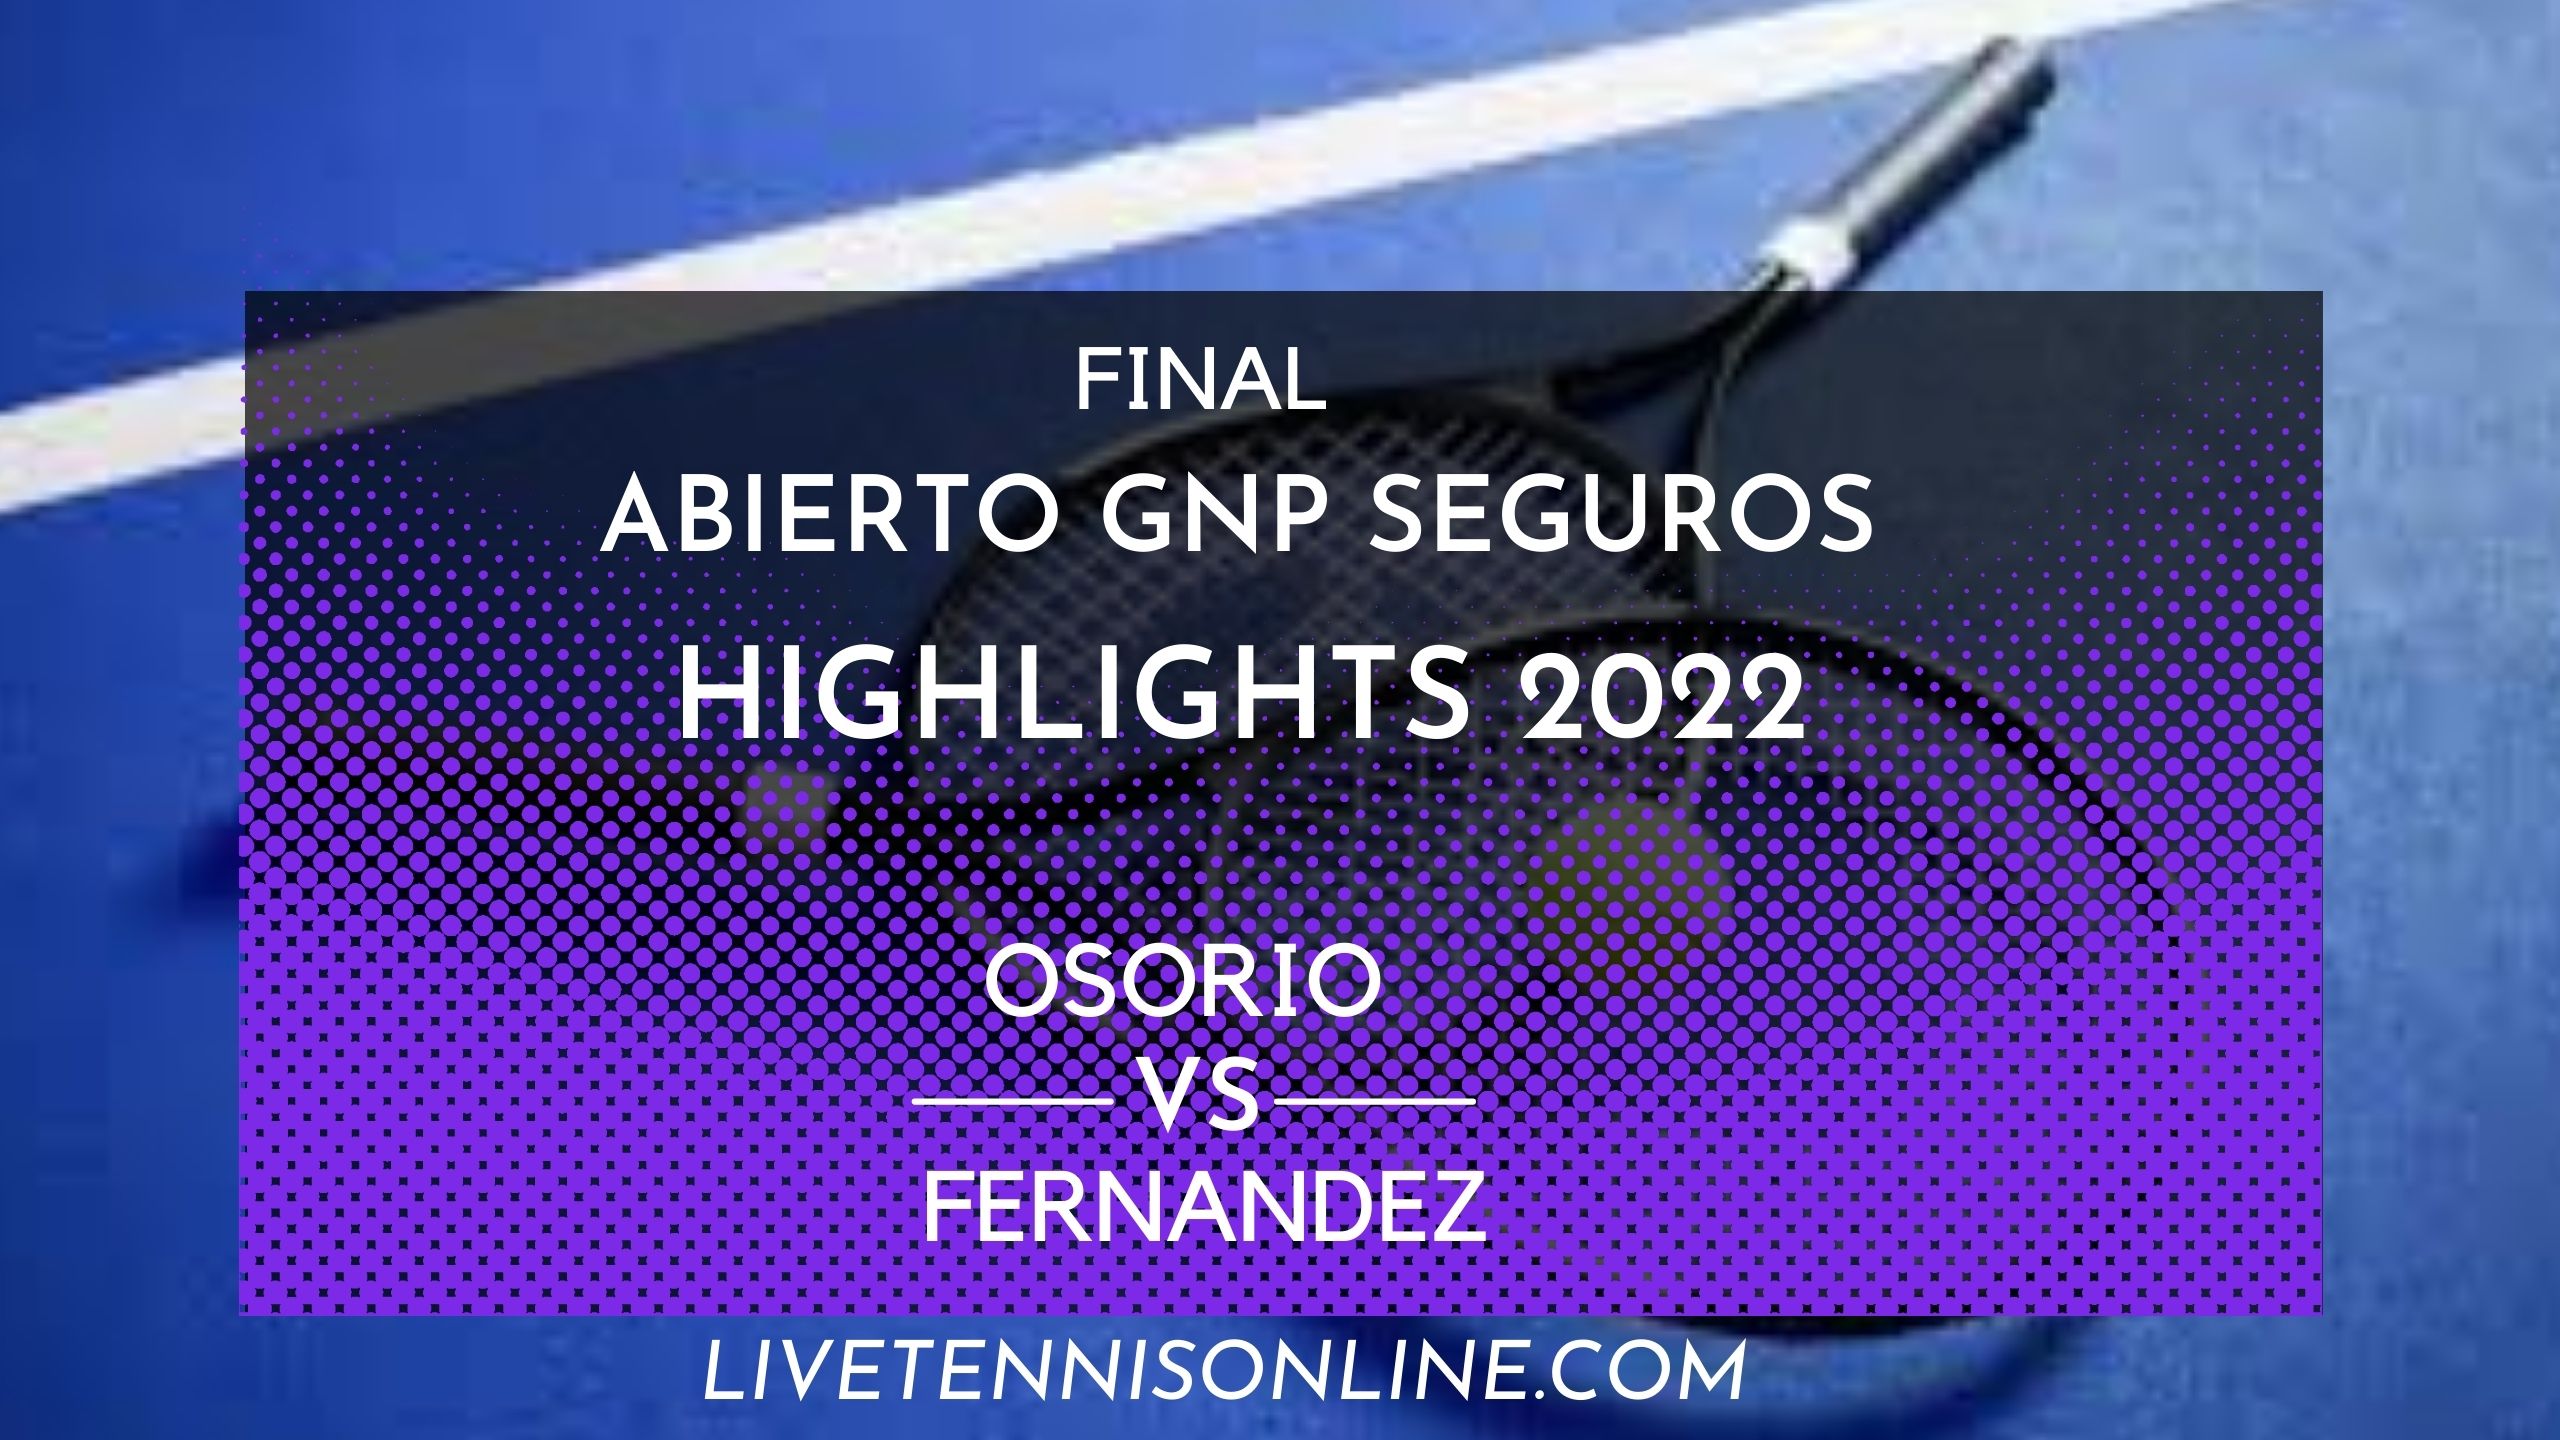 Osorio Vs Fernandez Final Highlights 2022